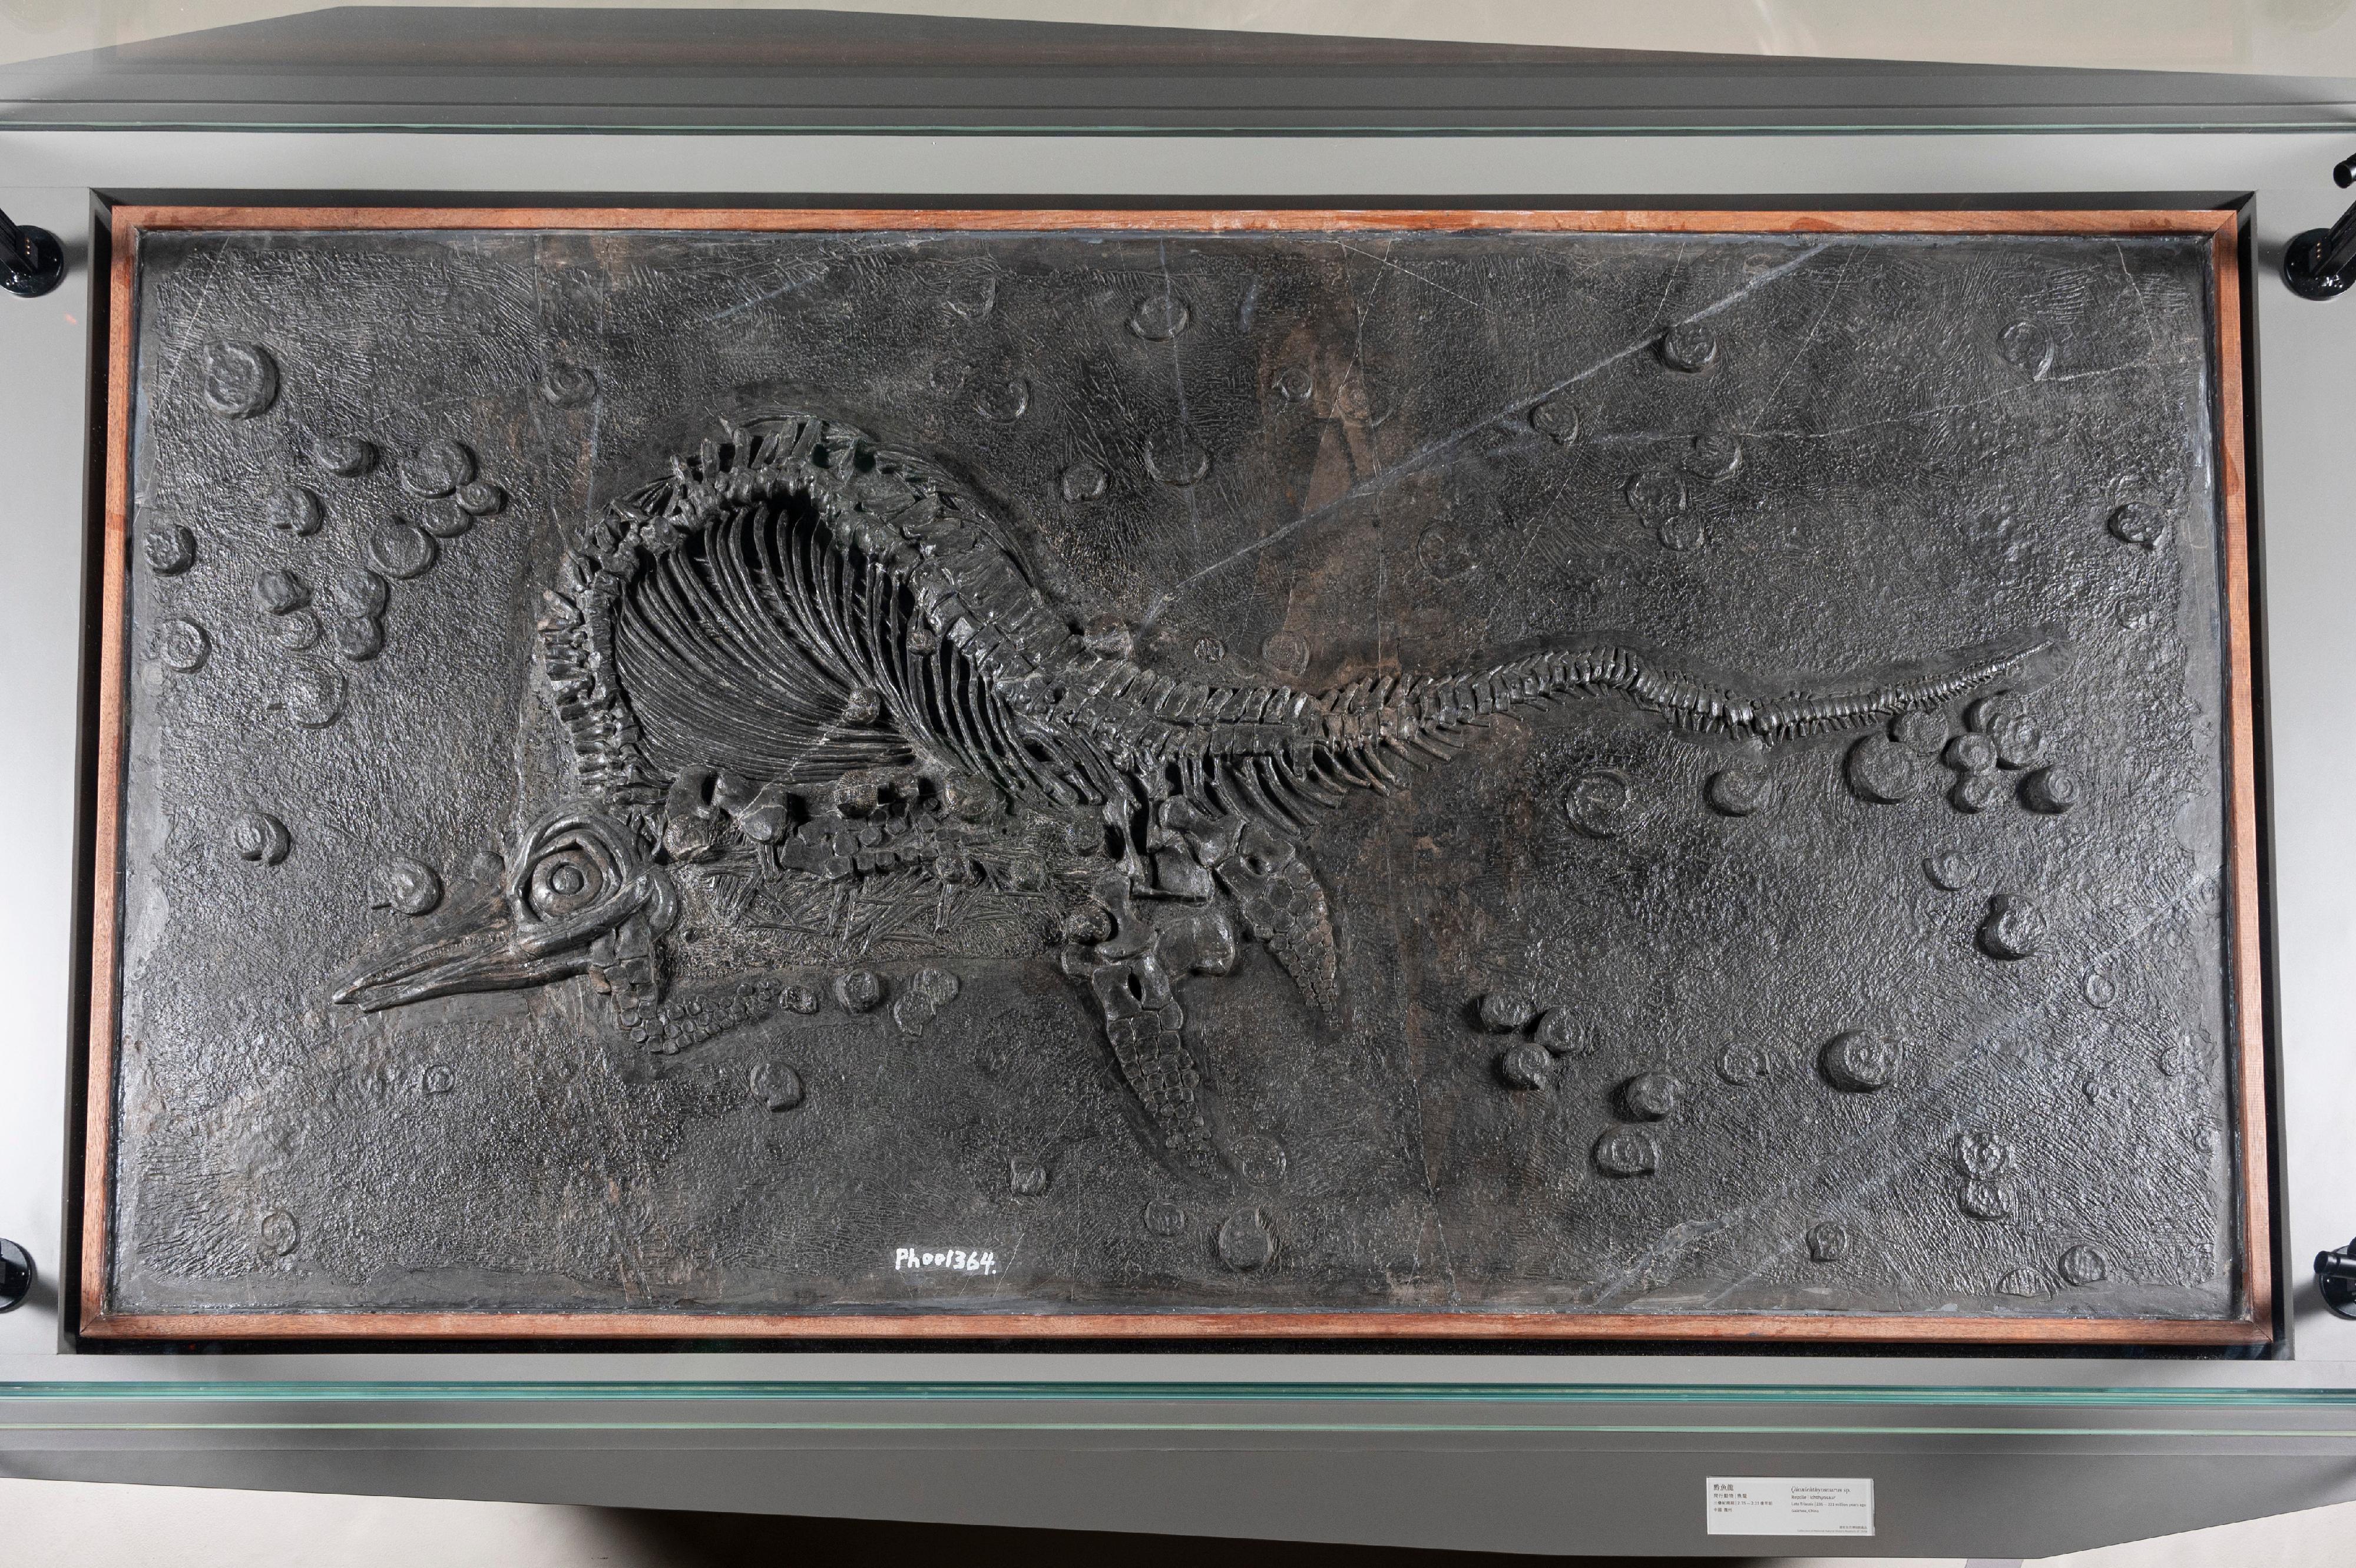 即將歸還予國家自然博物館、中國特有的魚龍品種黔魚龍的化石。